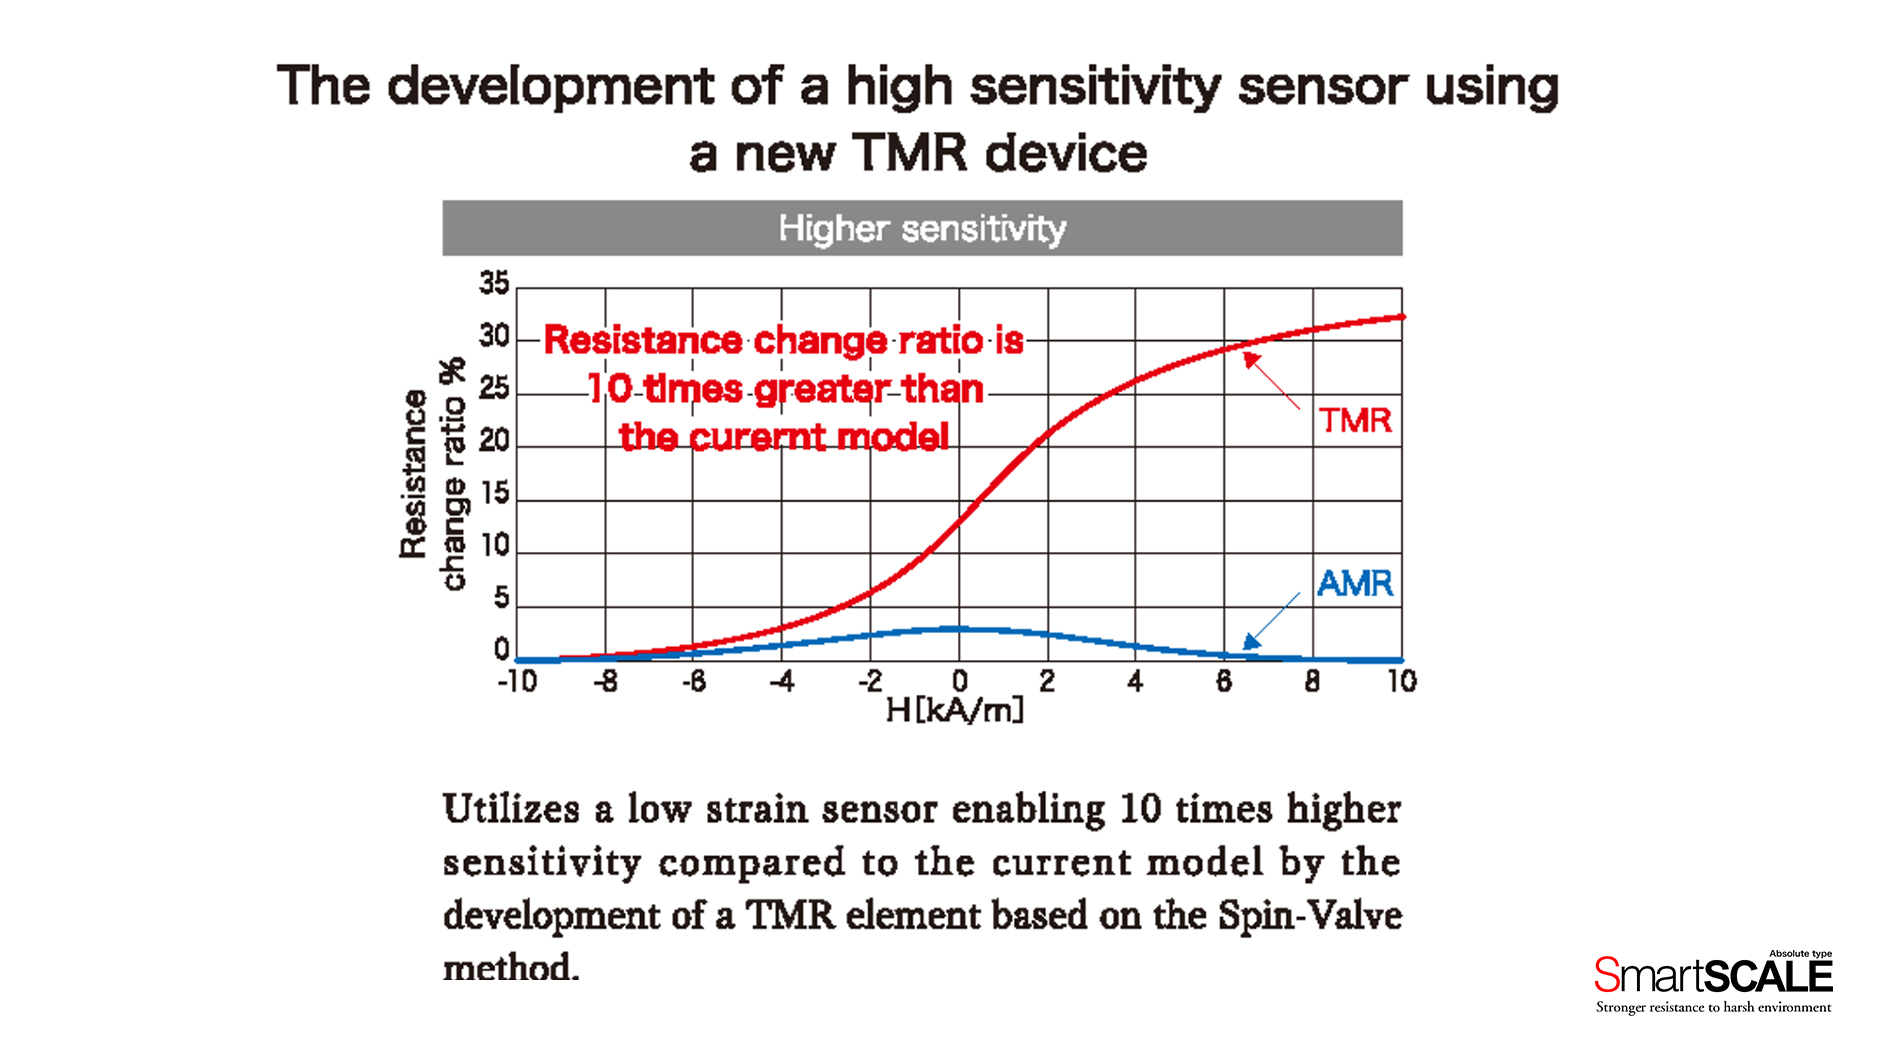 Die Entwickling eines hochsensiblen Sensors durch Nutzung neuer TMR-Elemente